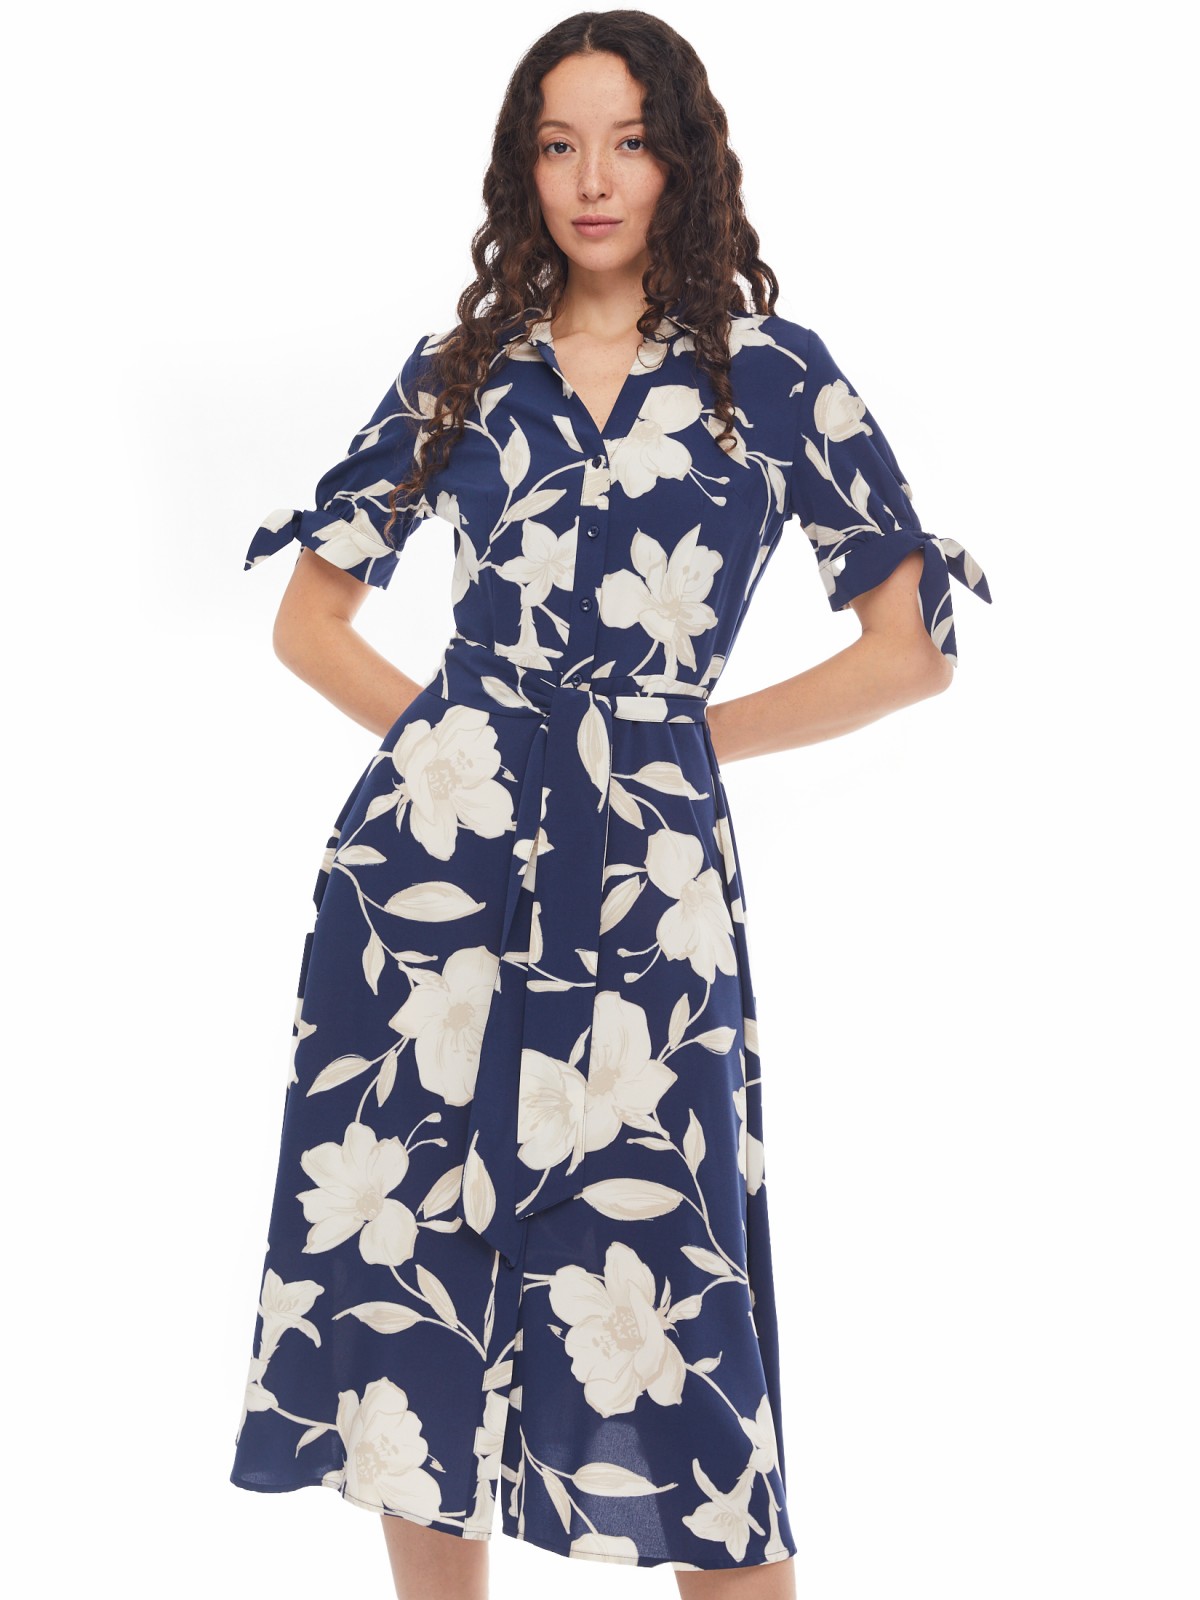 Платье-рубашка с поясом и акцентными короткими рукавами zolla 024138240242, цвет синий, размер XS